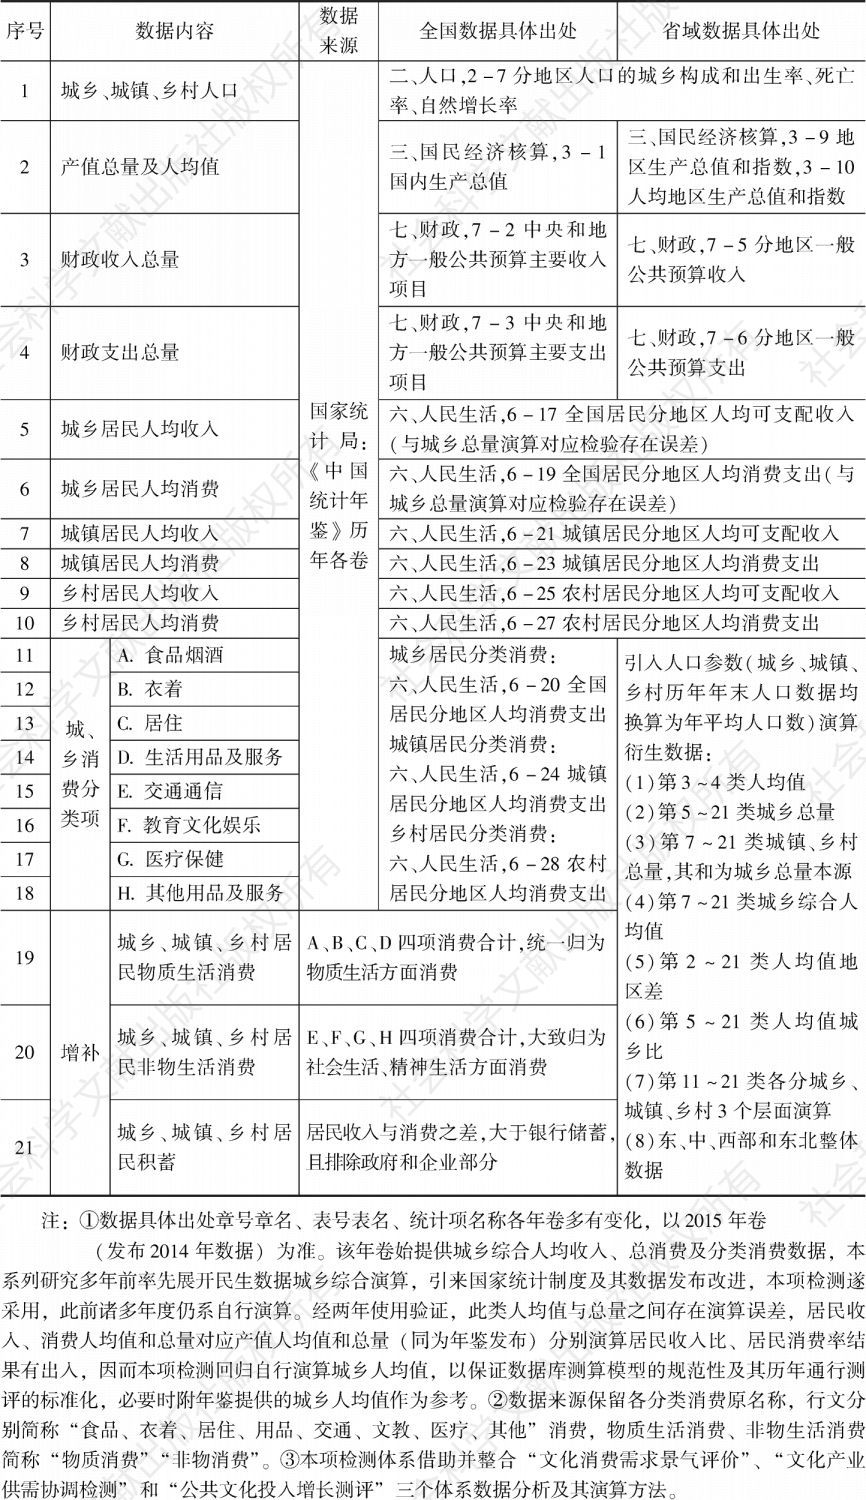 表1 “中国人民生活发展指数检测体系”数据来源、具体出处及相关演算